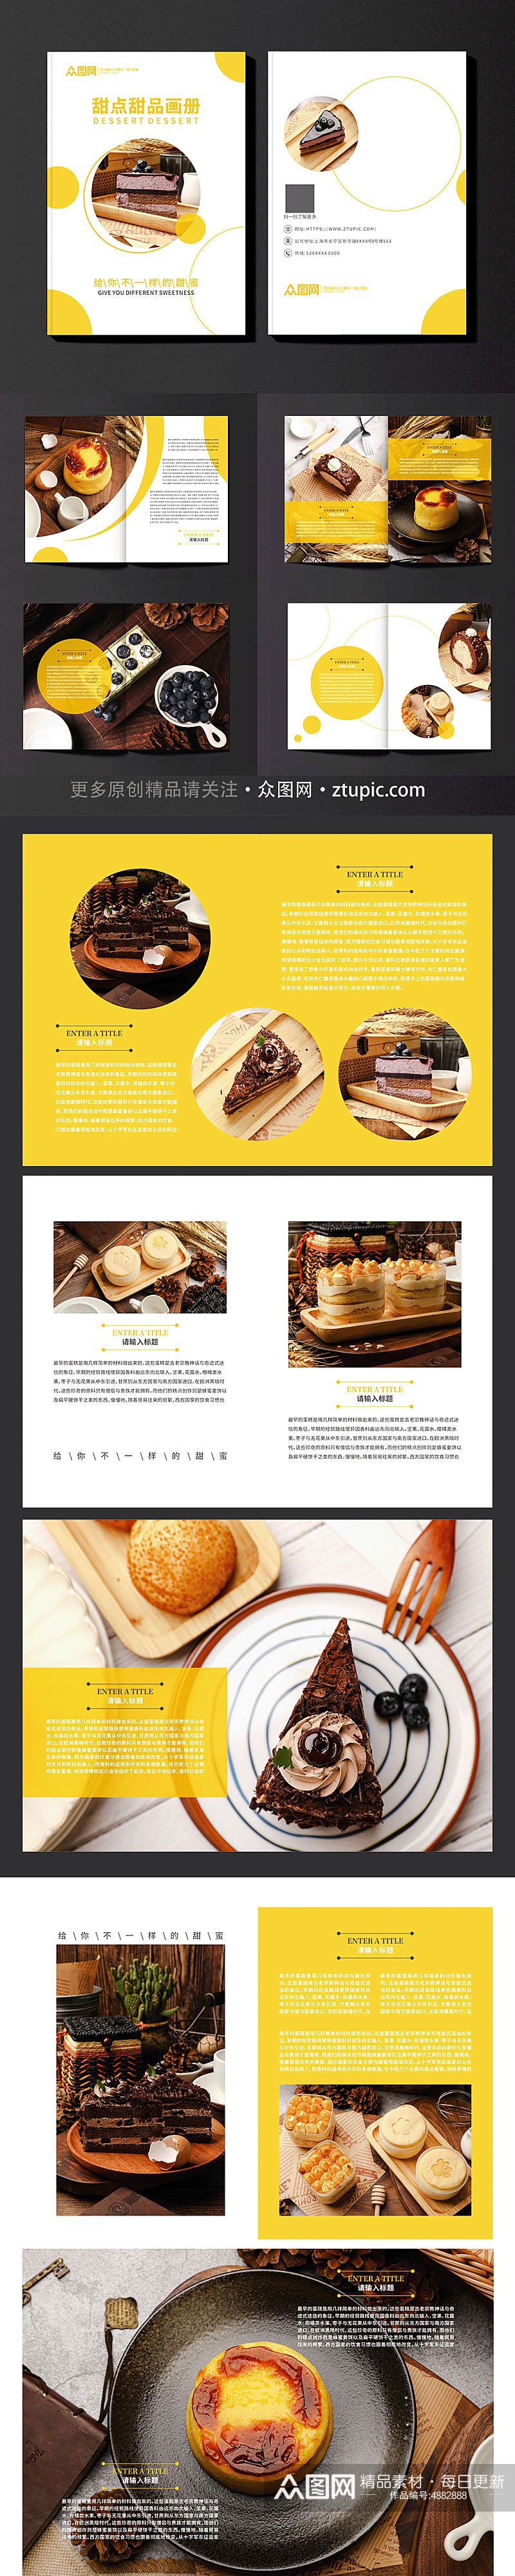 可口甜点甜品蛋糕下午茶美食宣传册画册素材